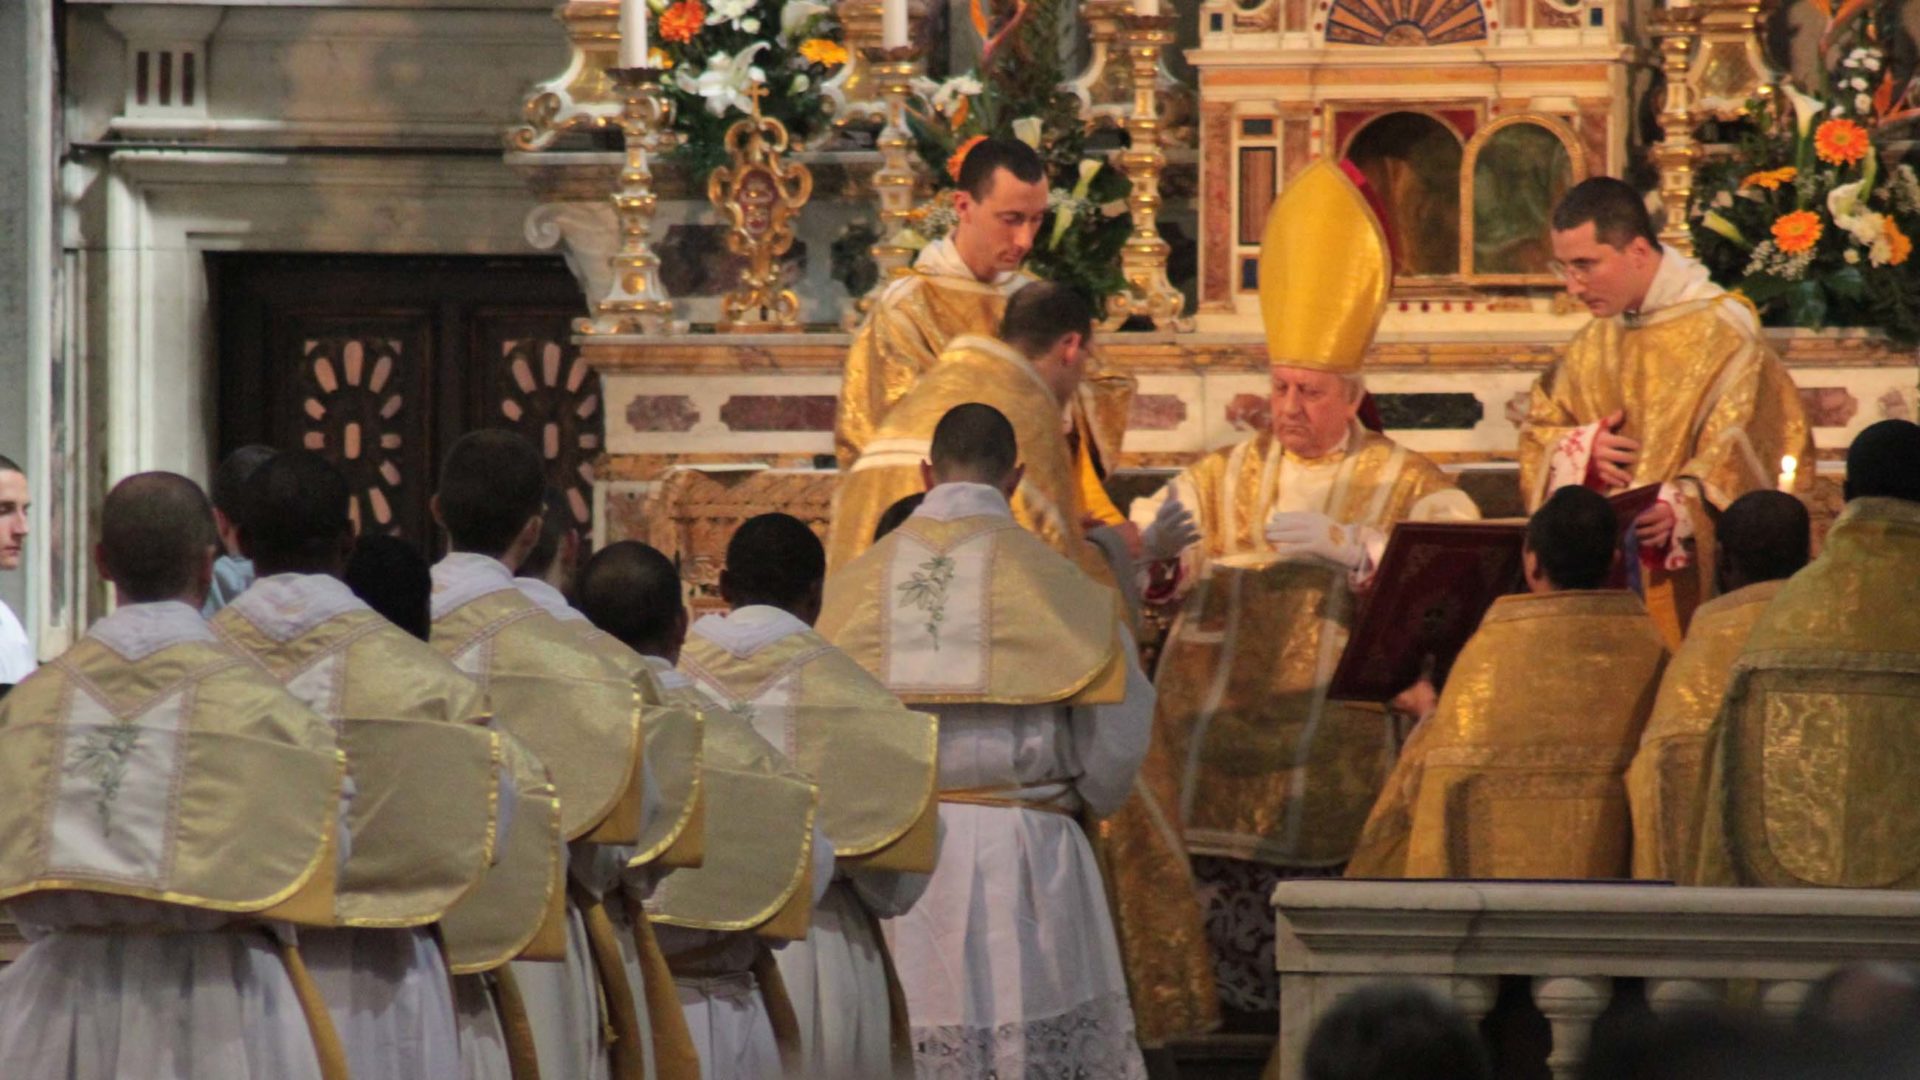 Priesterweihe in der Alten Messe für die Franziskaner der Immaculata in Florenz (2010) | Fr James Bradley, flickr.com (https://www.flickr.com/photos/jamesbradley/albums/72157623582168781) Lizenz: CC BY 2.0 (https://creativecommons.org/licenses/by/2.0/)